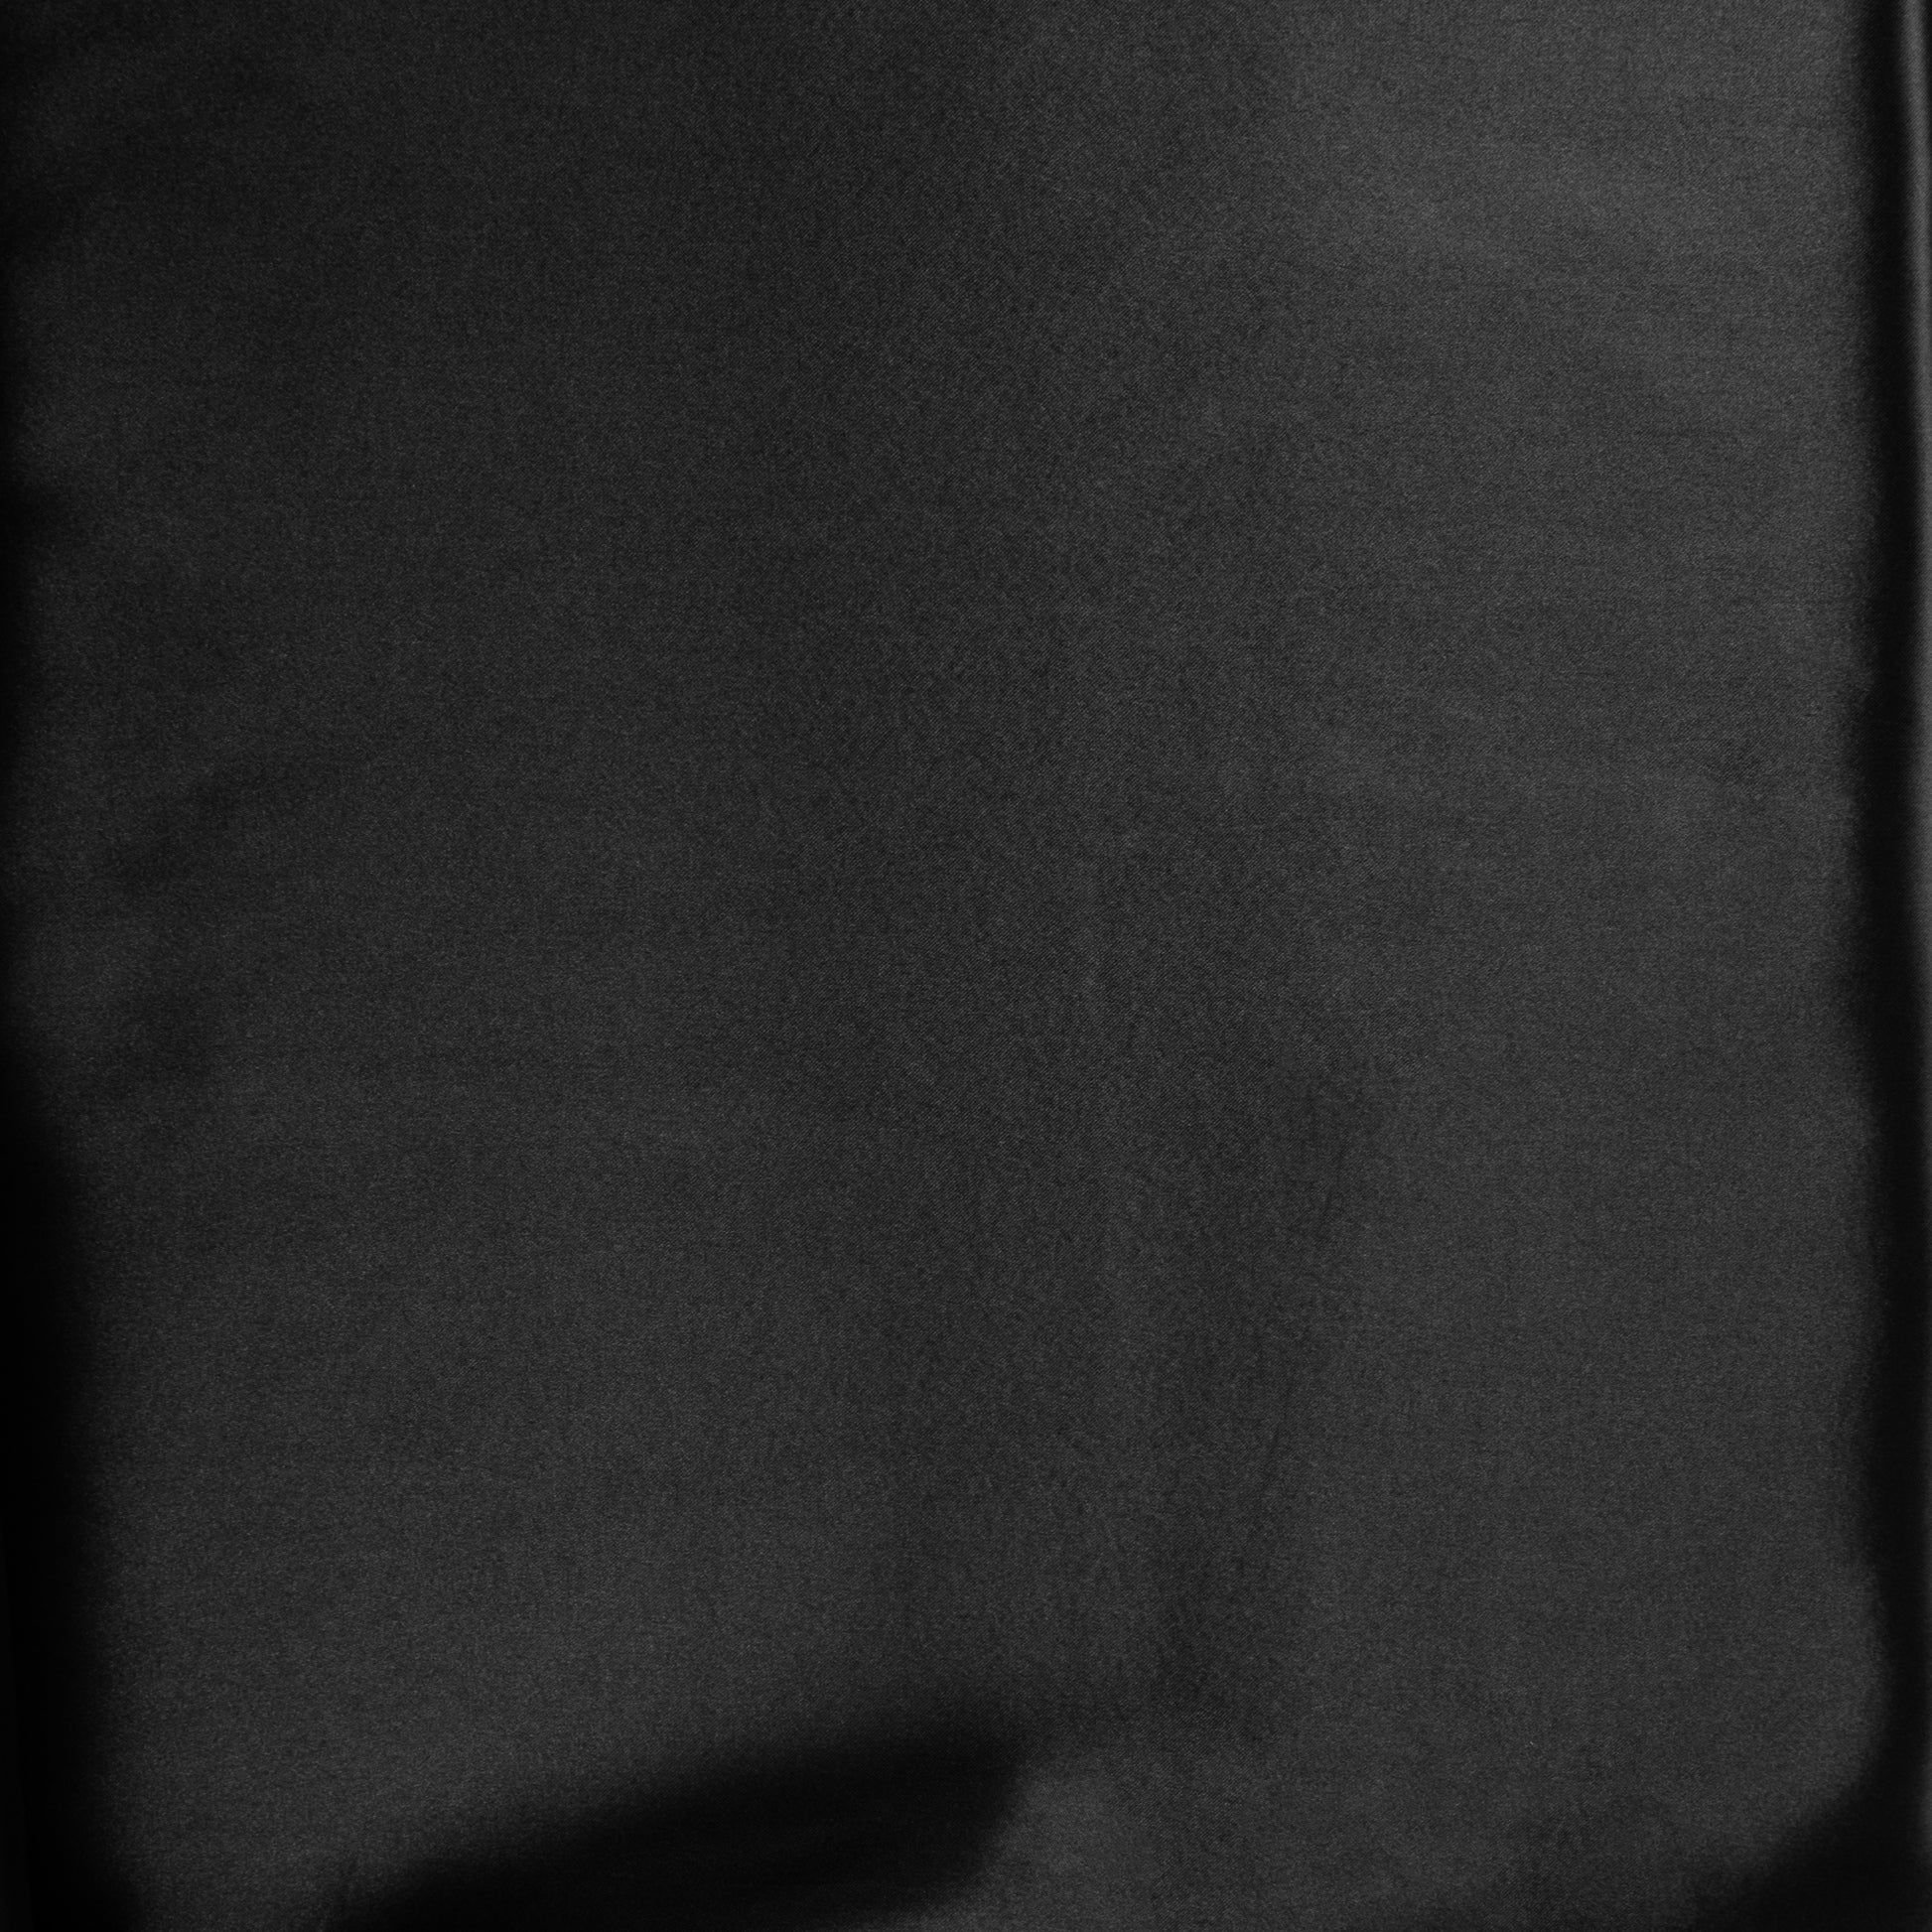 40 yds Satin Fabric Roll - Black - CV Linens